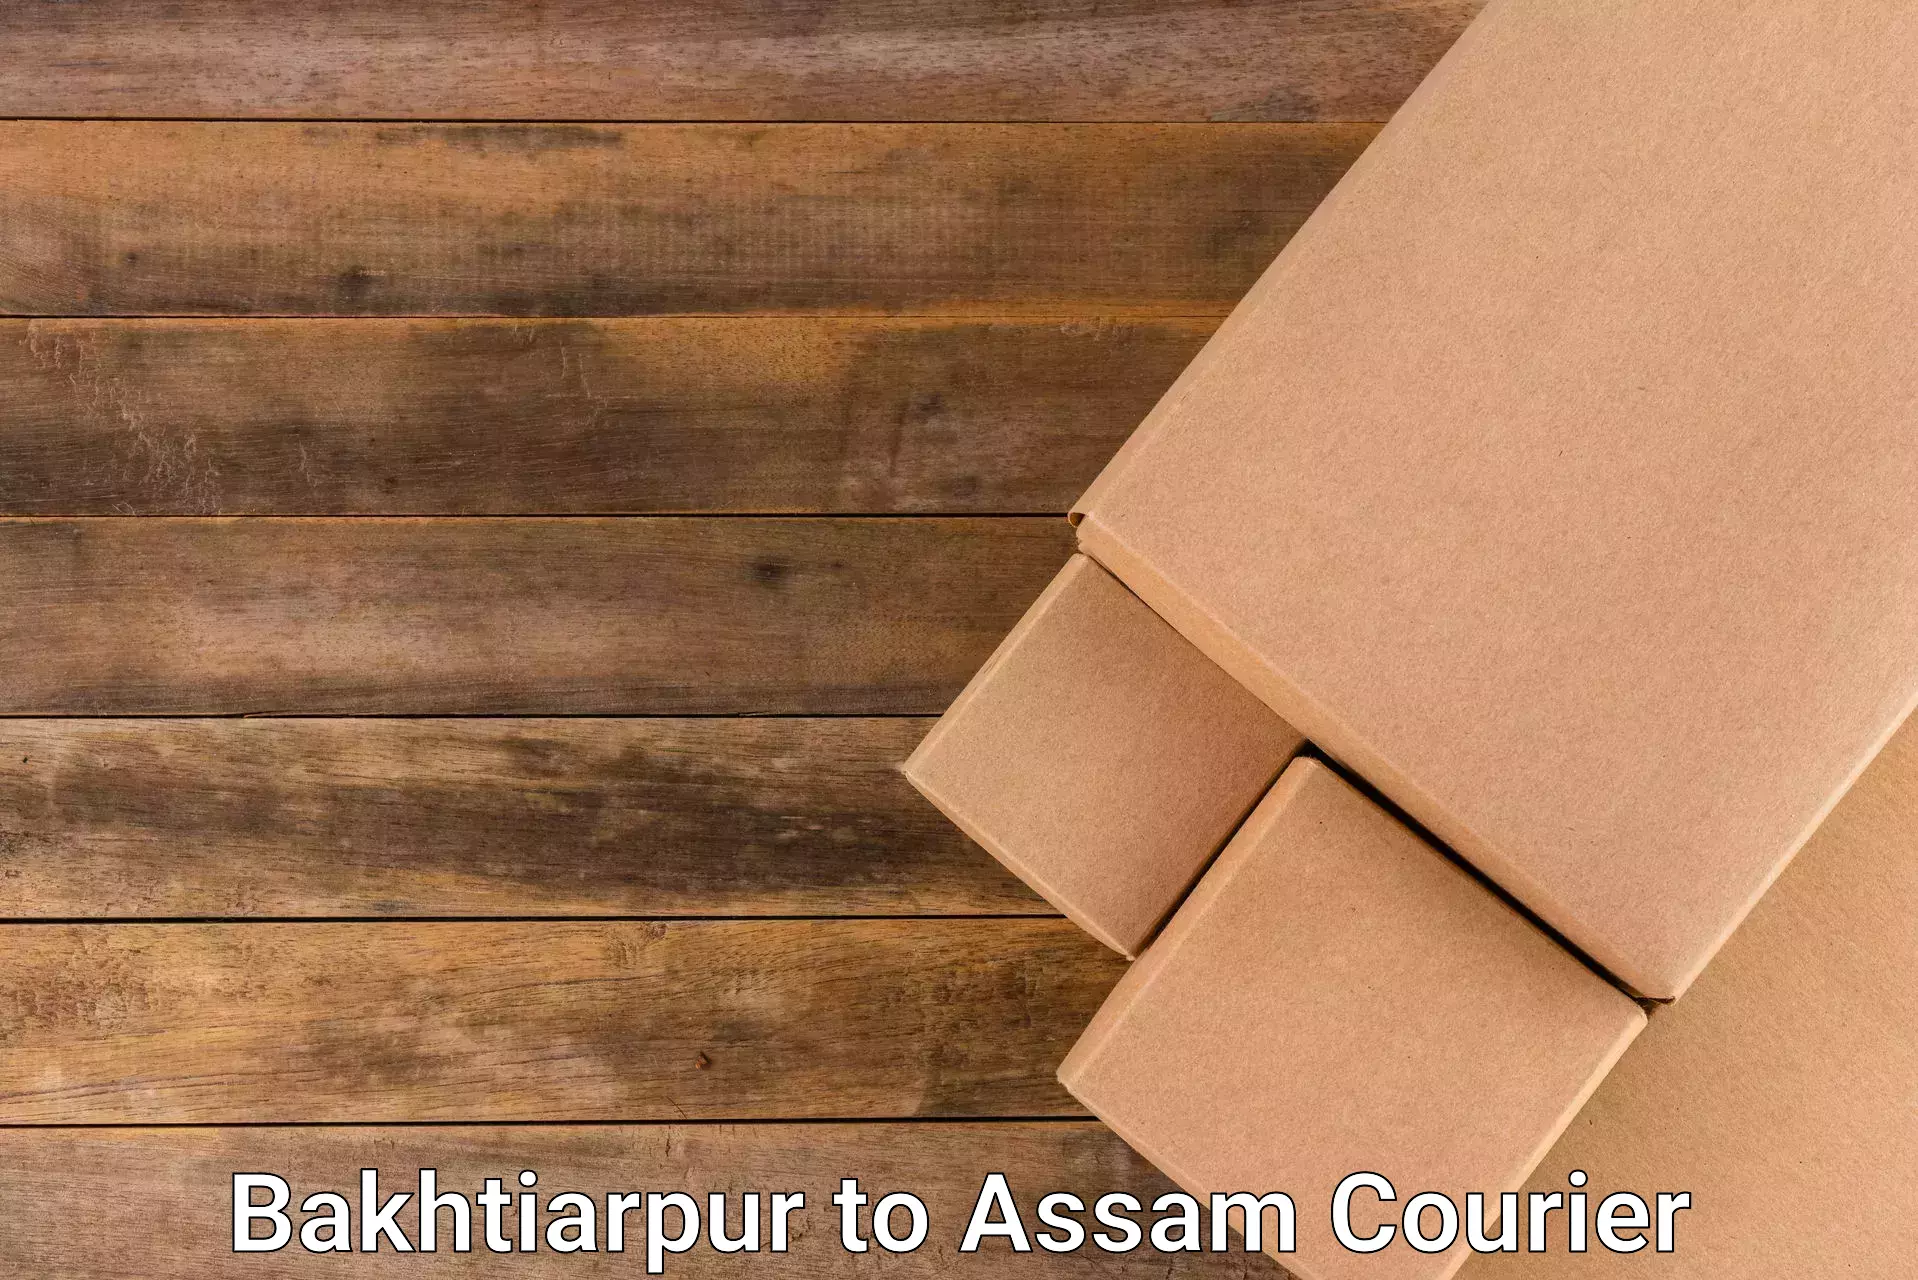 Round-the-clock parcel delivery Bakhtiarpur to Chapar